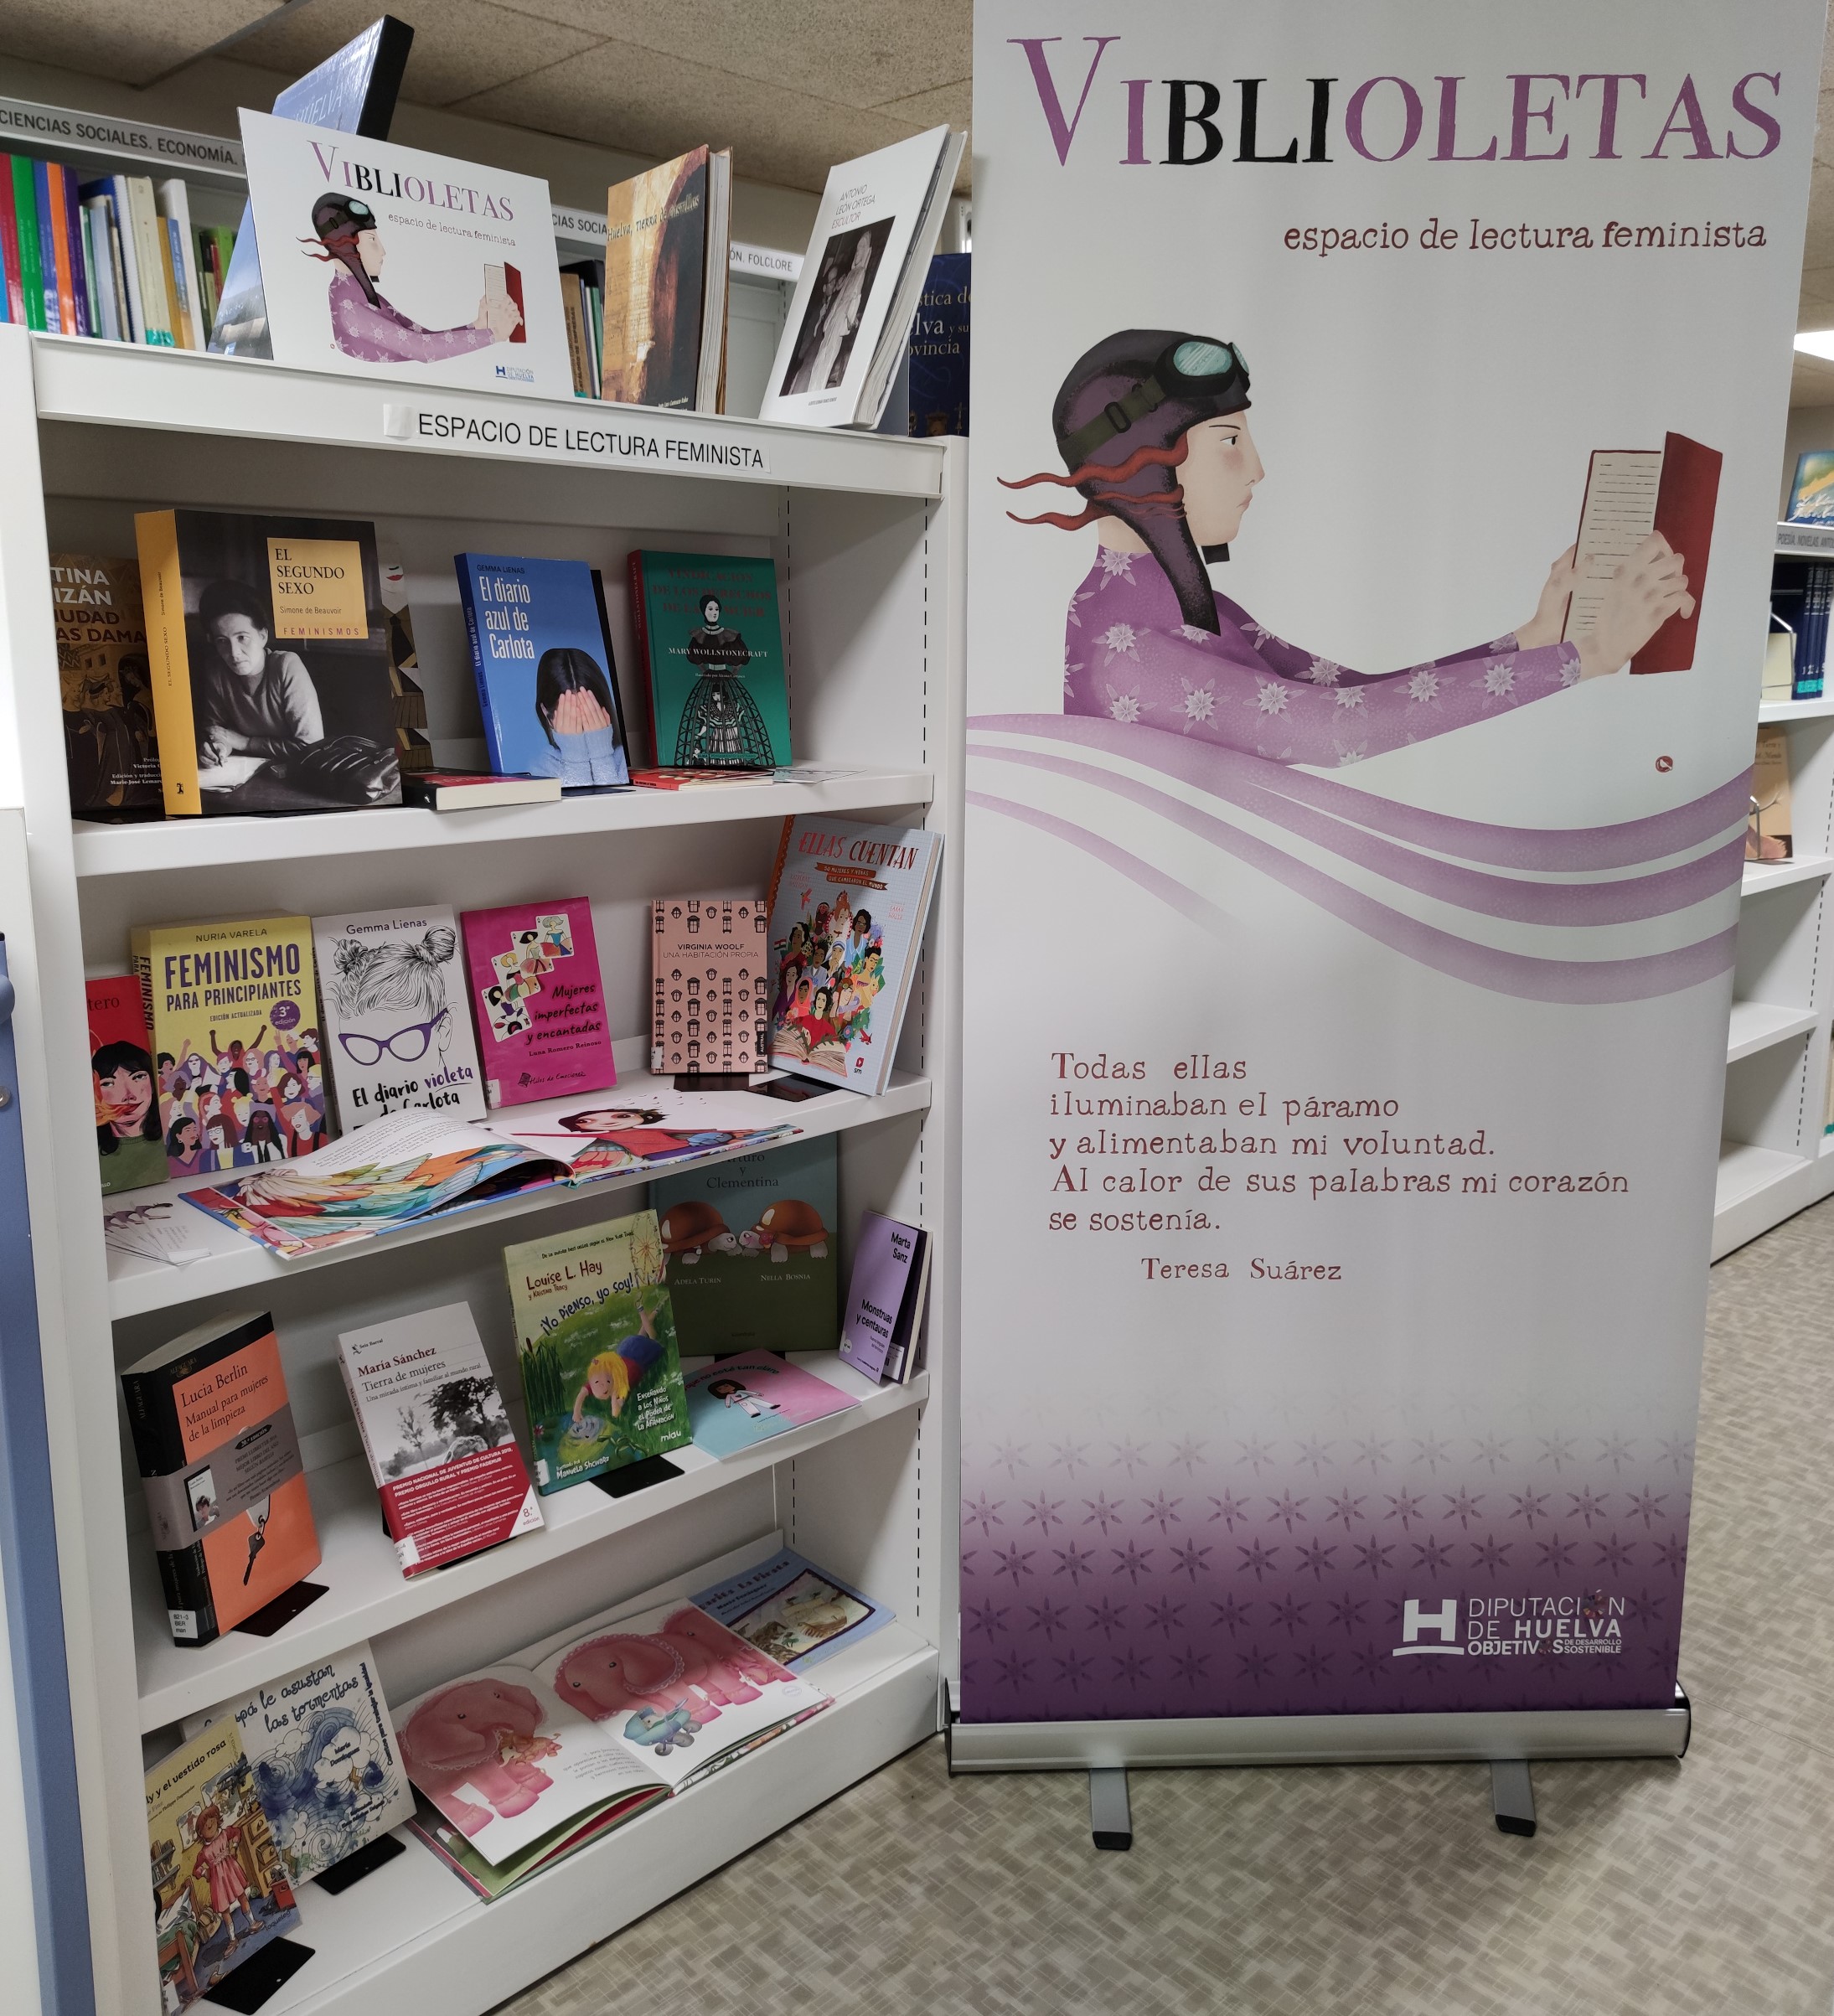 El proyecto “Viblioletas” de Diputación se enriquece con el envío de 12 nuevos títulos a los espacios de lectura feminista de la provincia